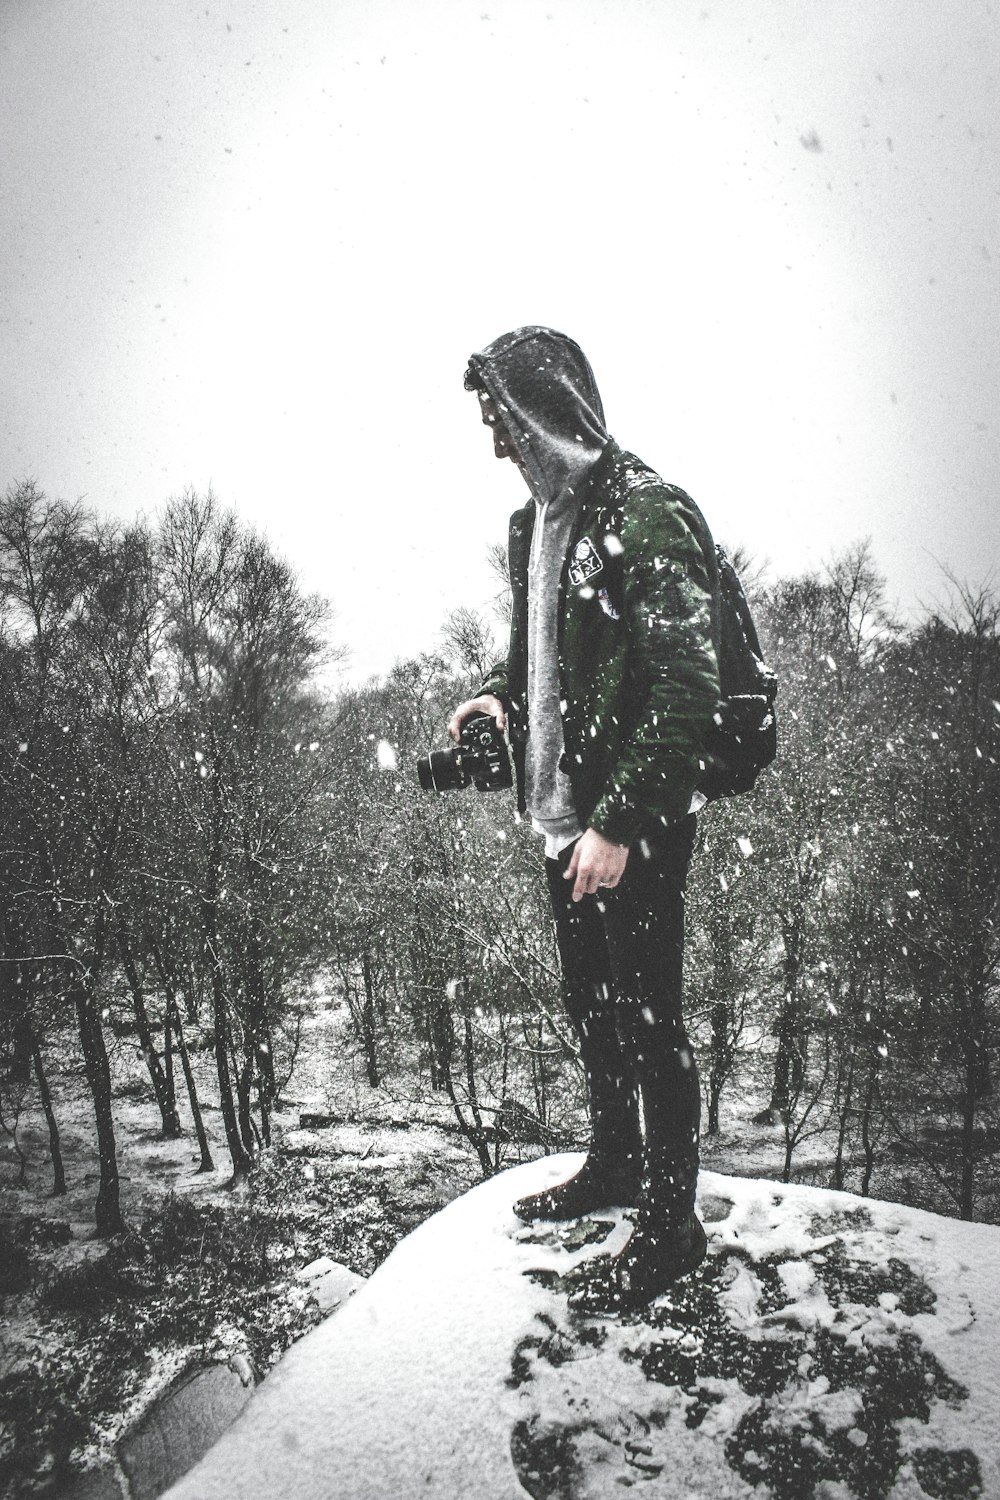 Hombre con chaqueta negra y pantalones parado en un suelo cubierto de nieve